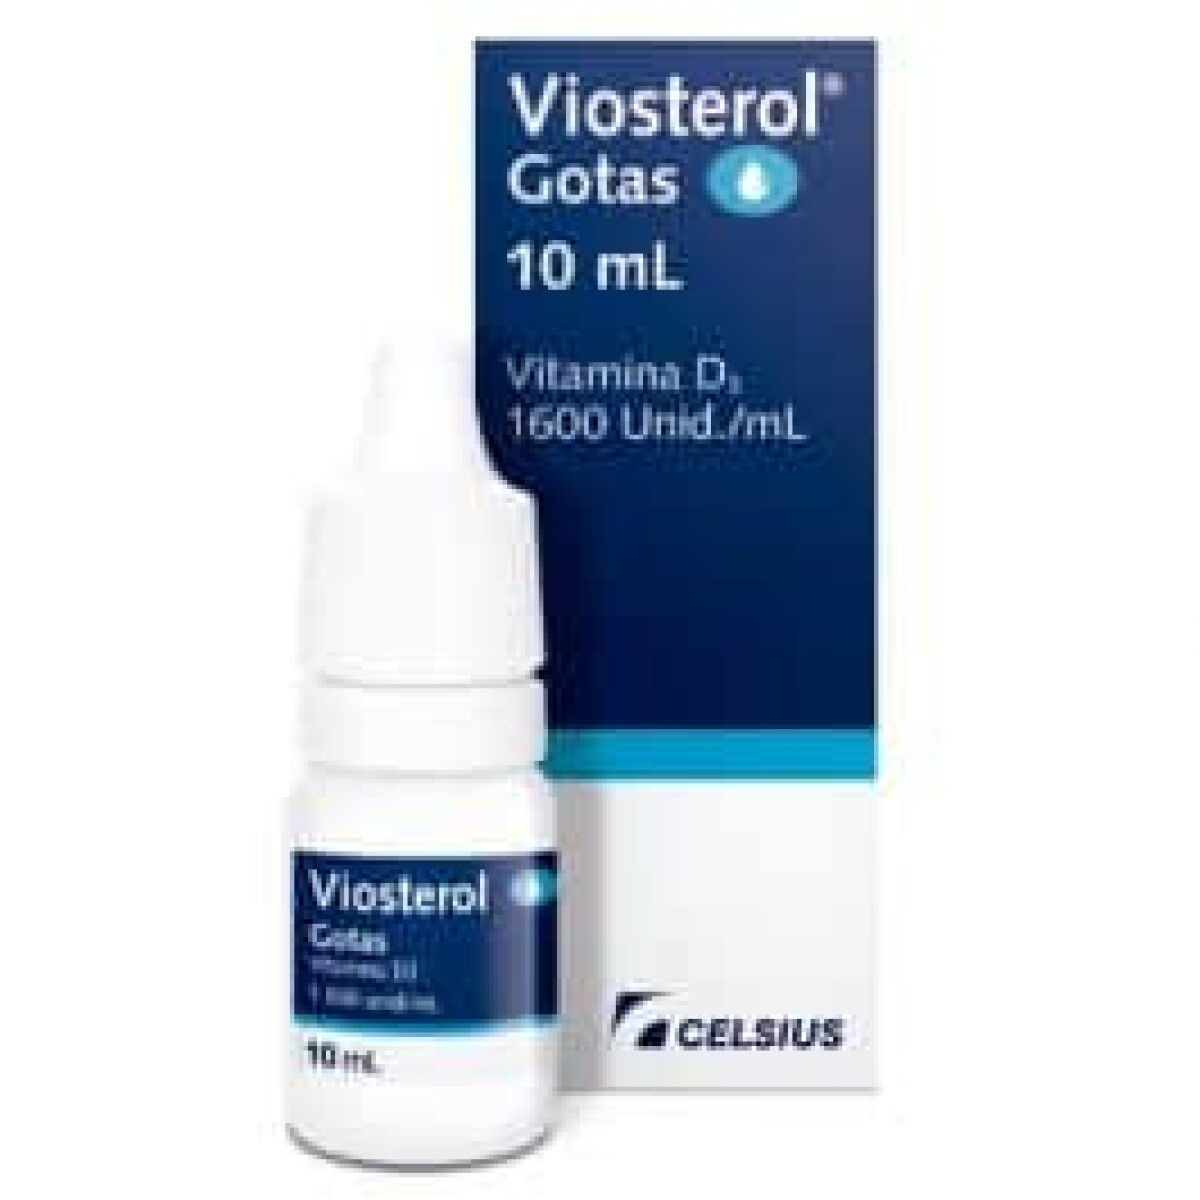 Viosterol Gts 